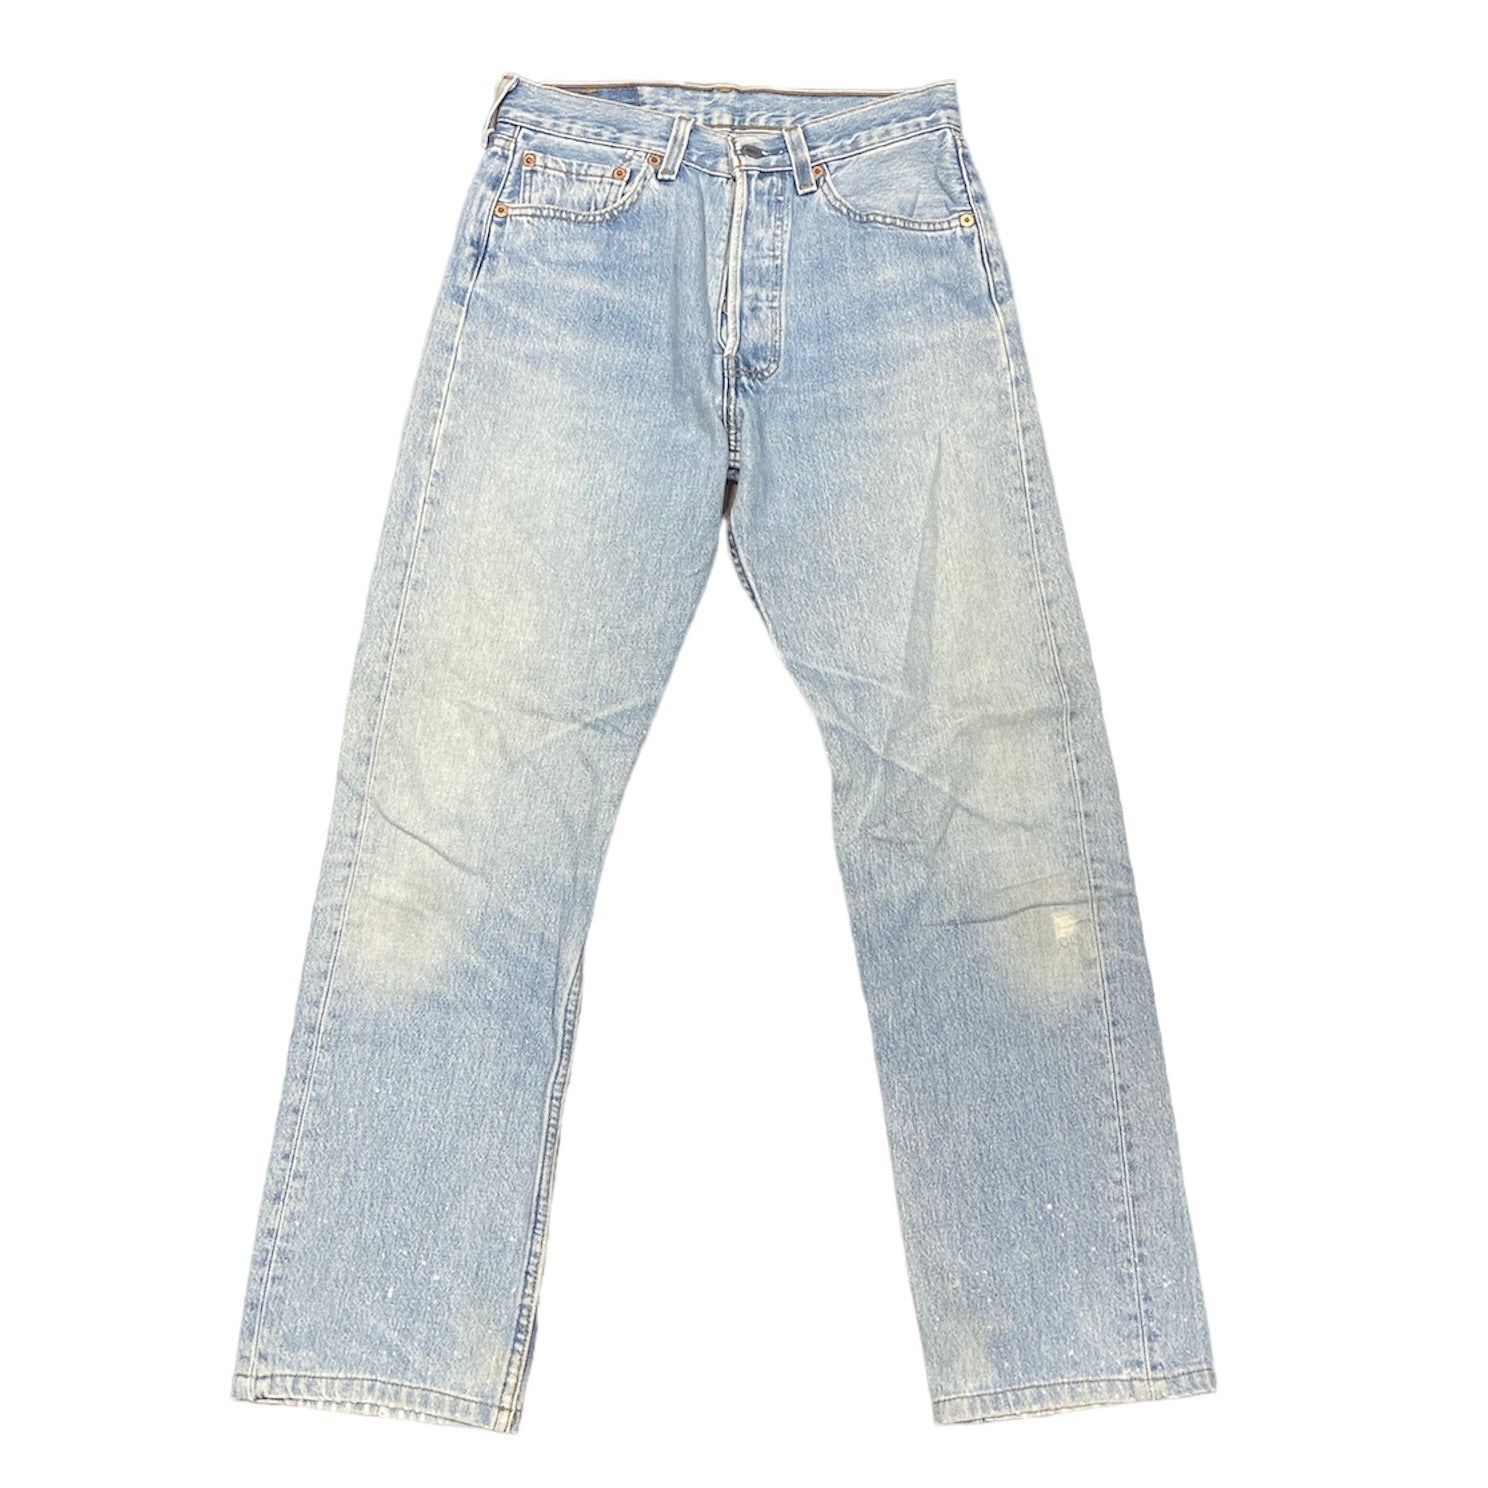 Vintage Levis 501 Blue Jeans (W28/L34)(W)